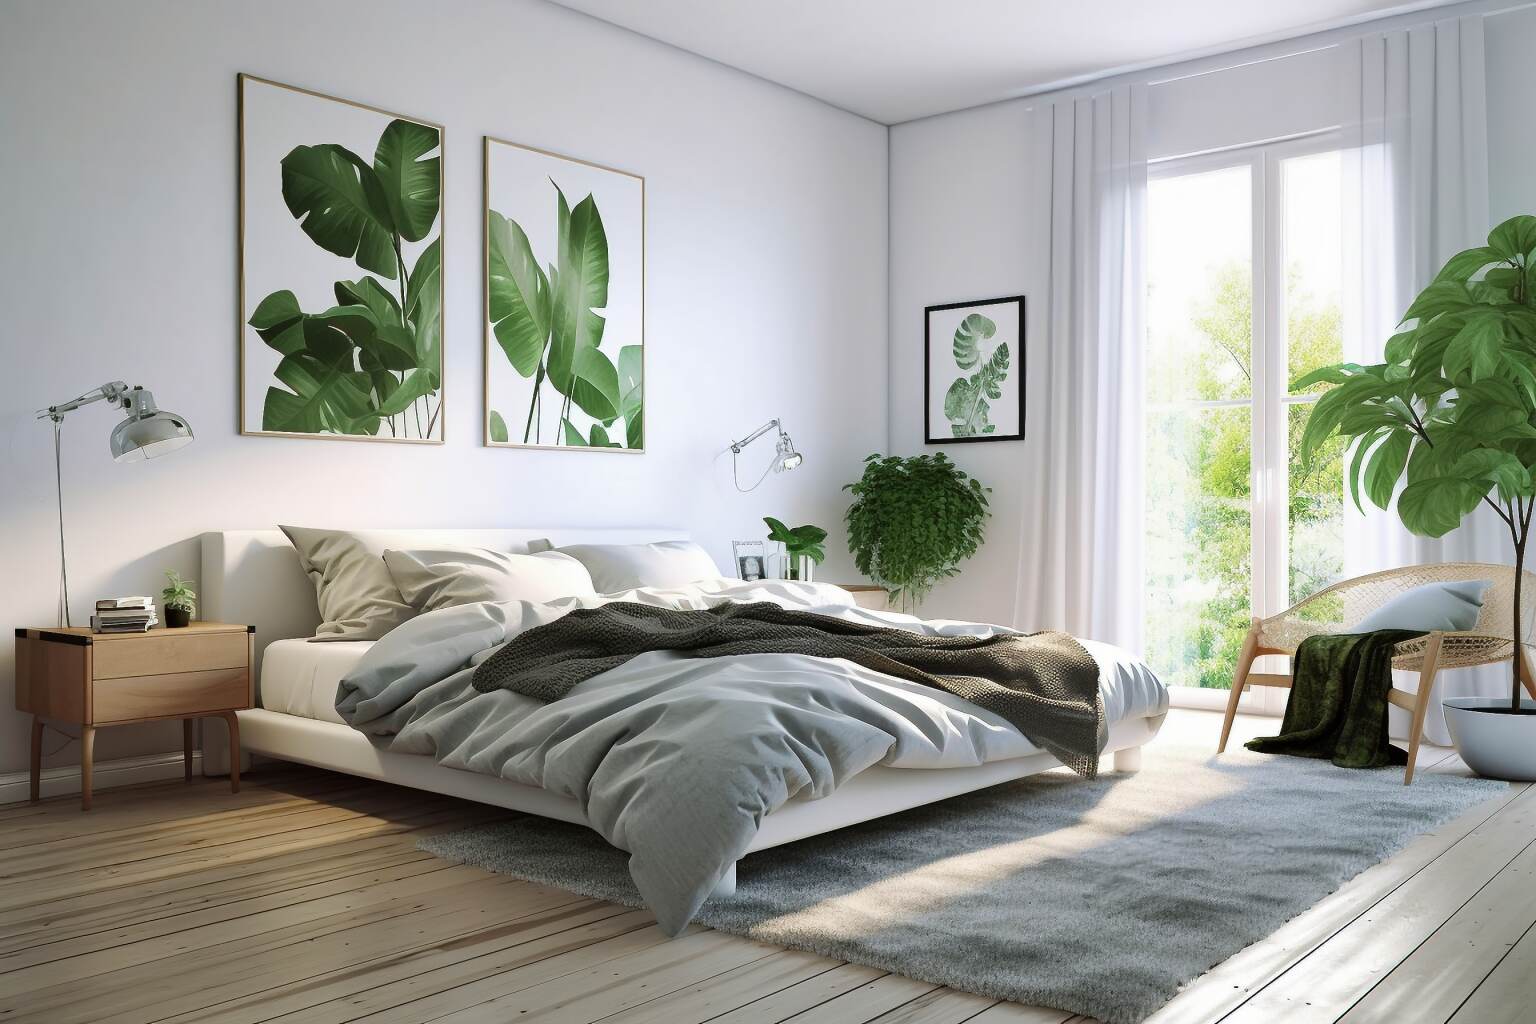 Scandinavian Bedroom Incorporating Living Elements